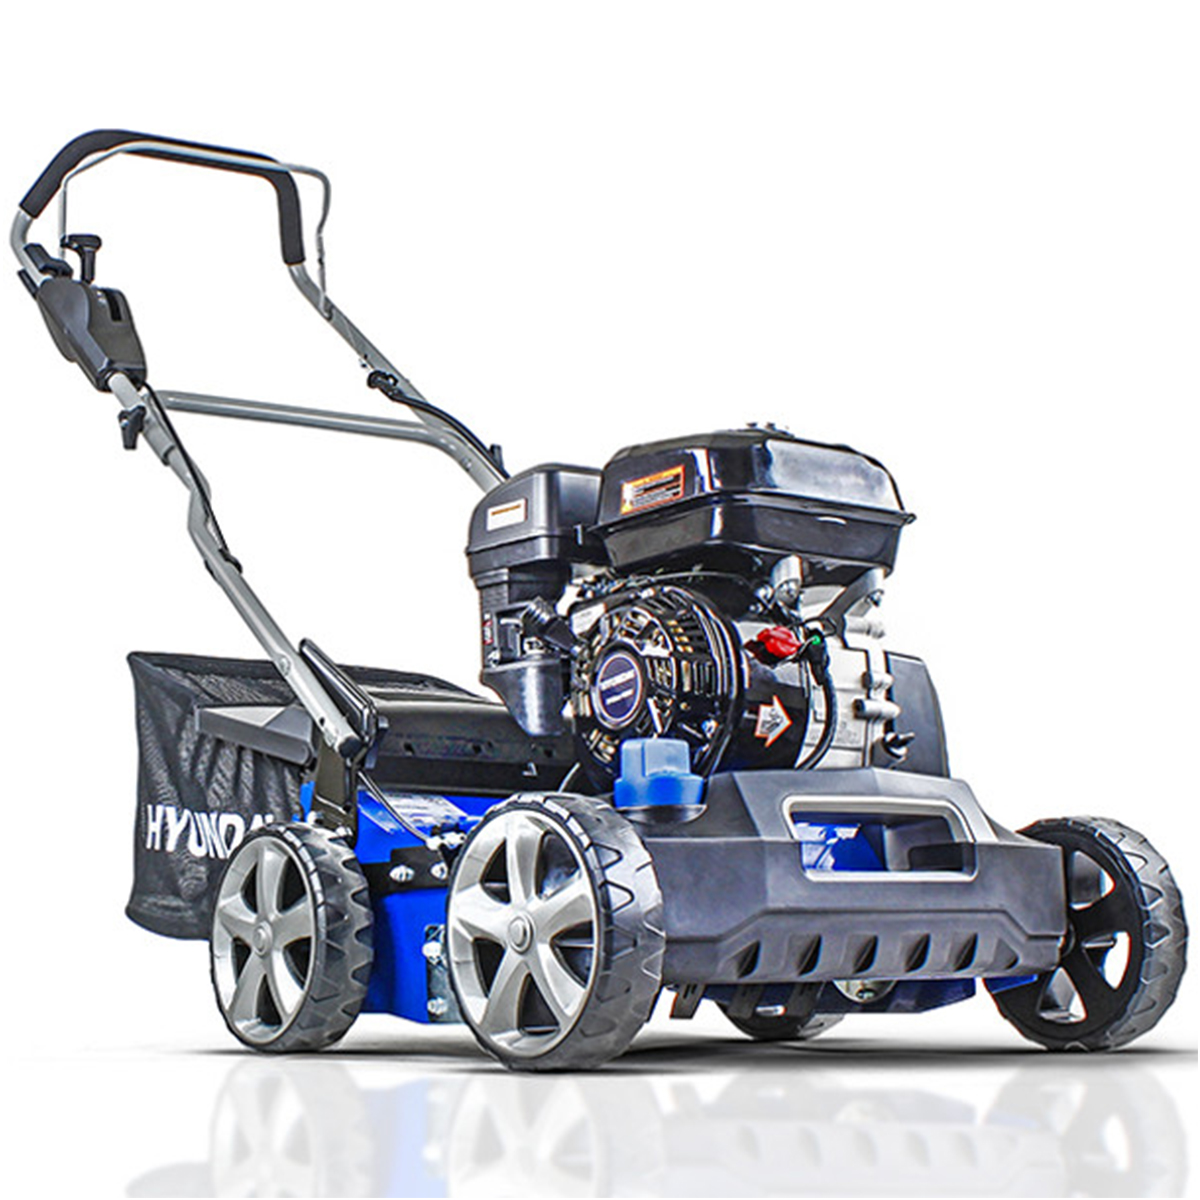 Hyundai-HYSC210-212cc-Petrol-Lawn-Scarifier-and-Aerator-Angled-